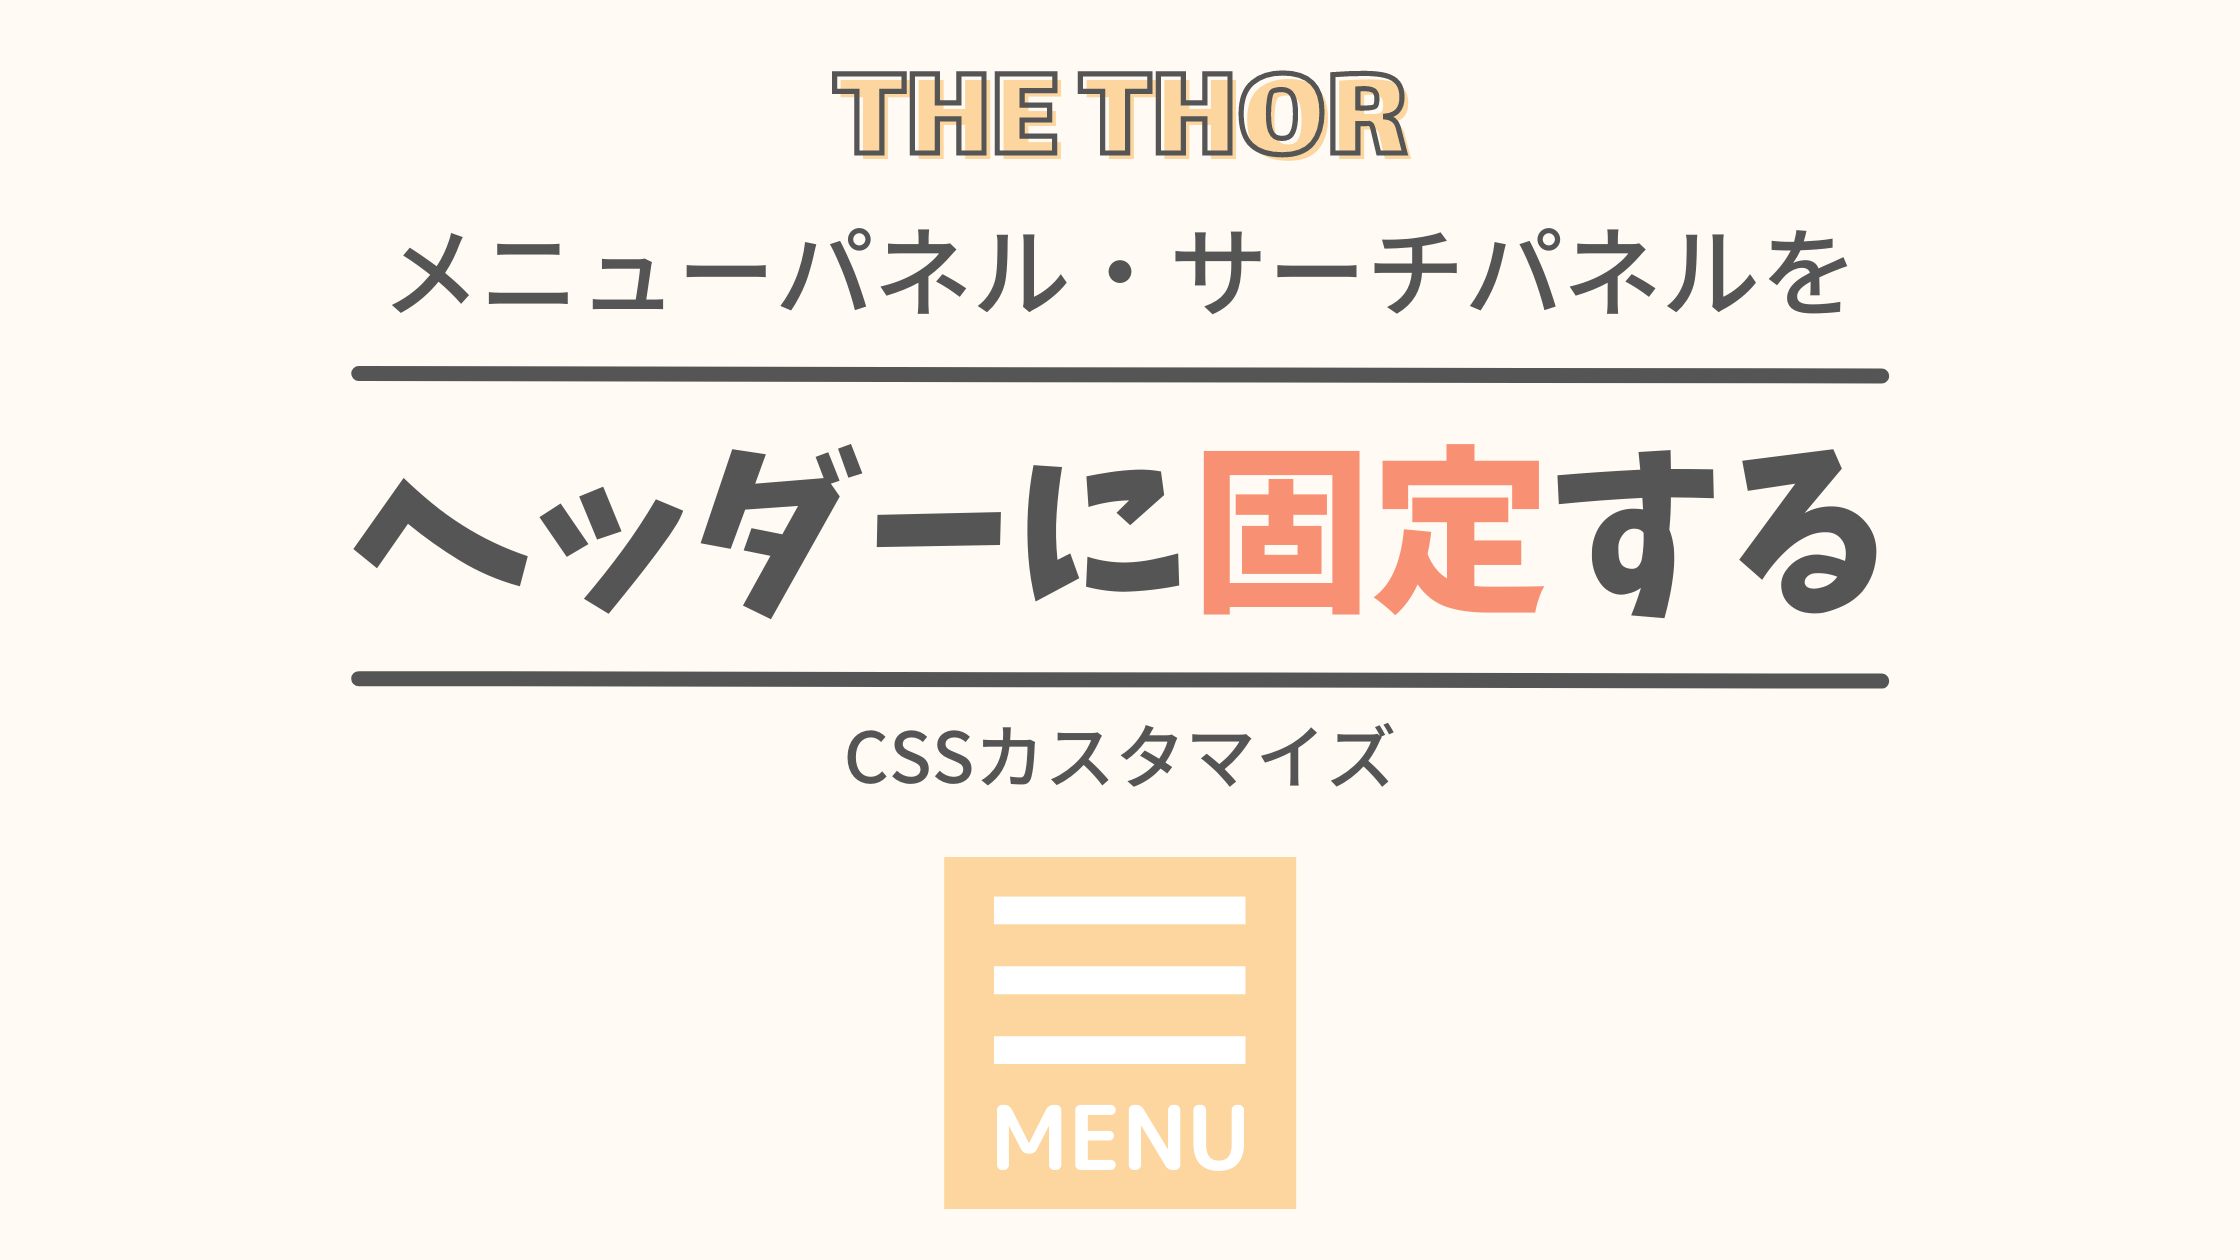 【THE THOR】ヘッダーメニューパネルを上部に固定：CSSカスタマイズ